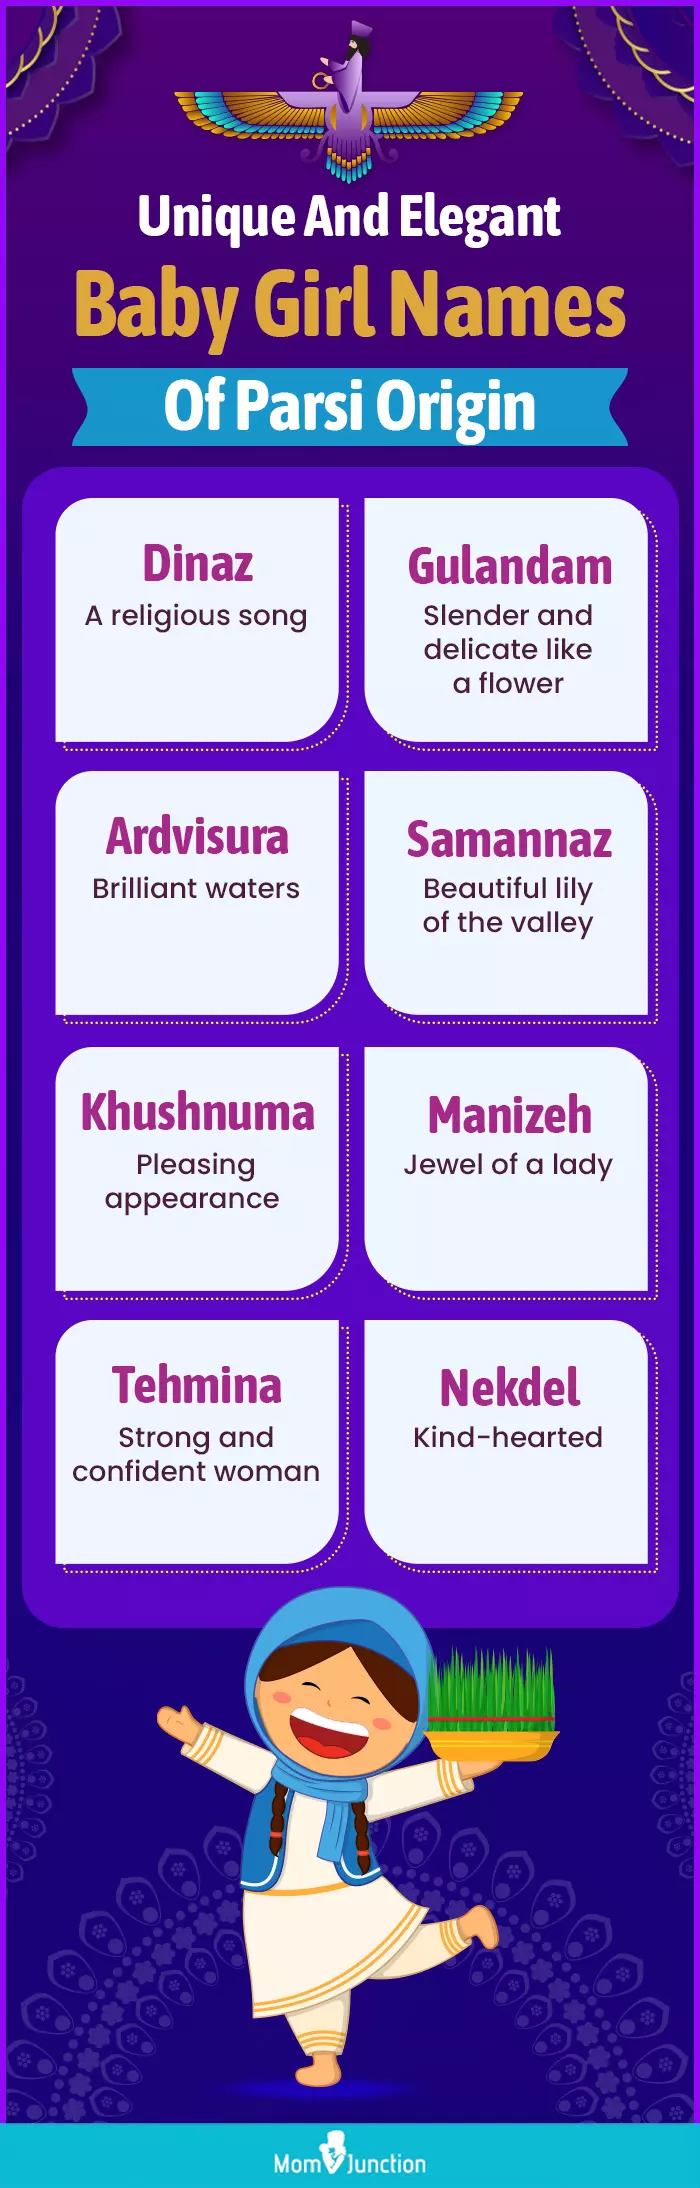 unique and elegant baby girl names of parsi origin (infographic)